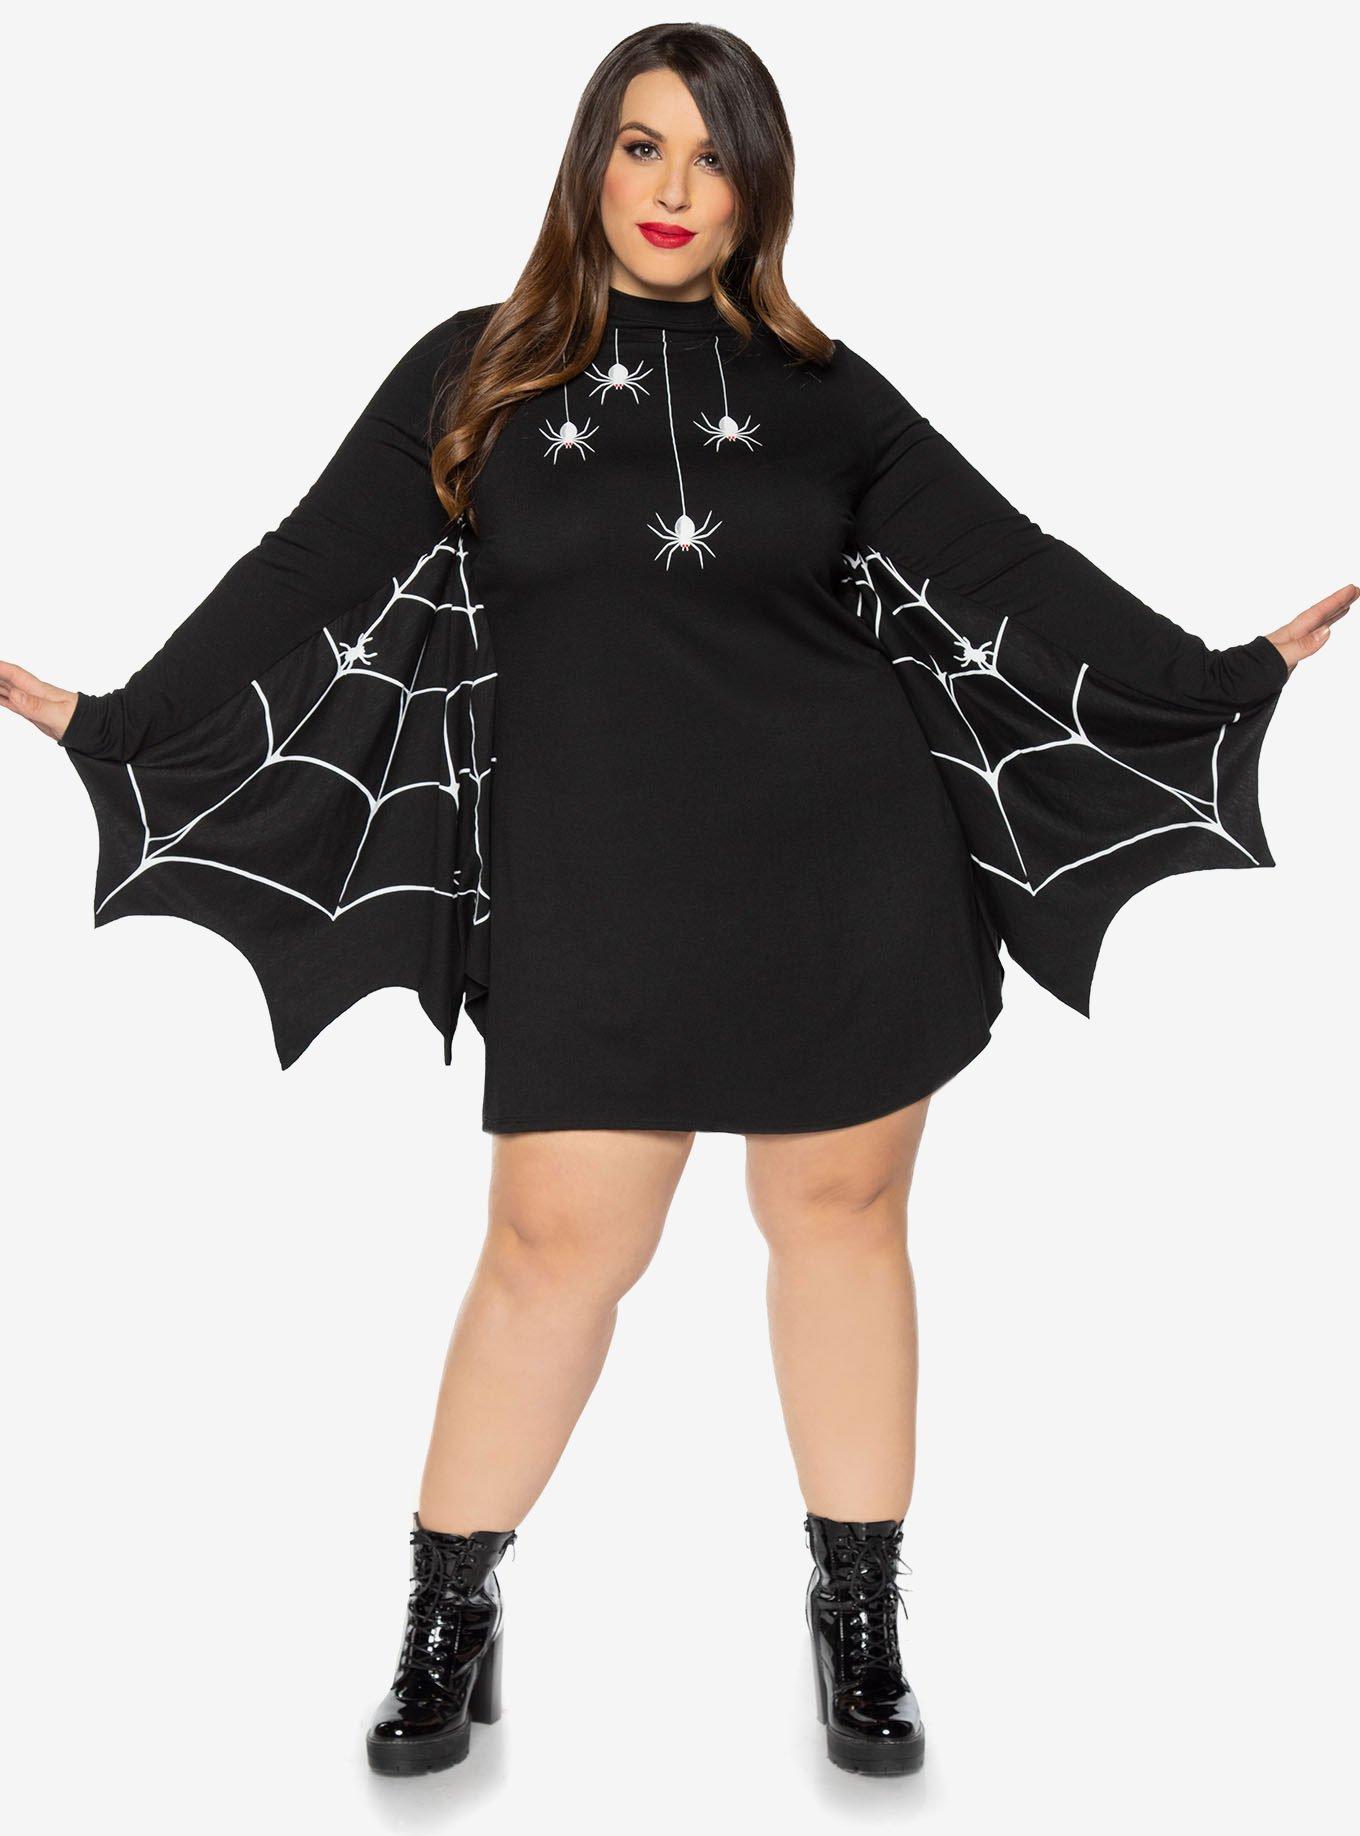 Spiderweb Winged Dress Plus Size, BLACK, hi-res